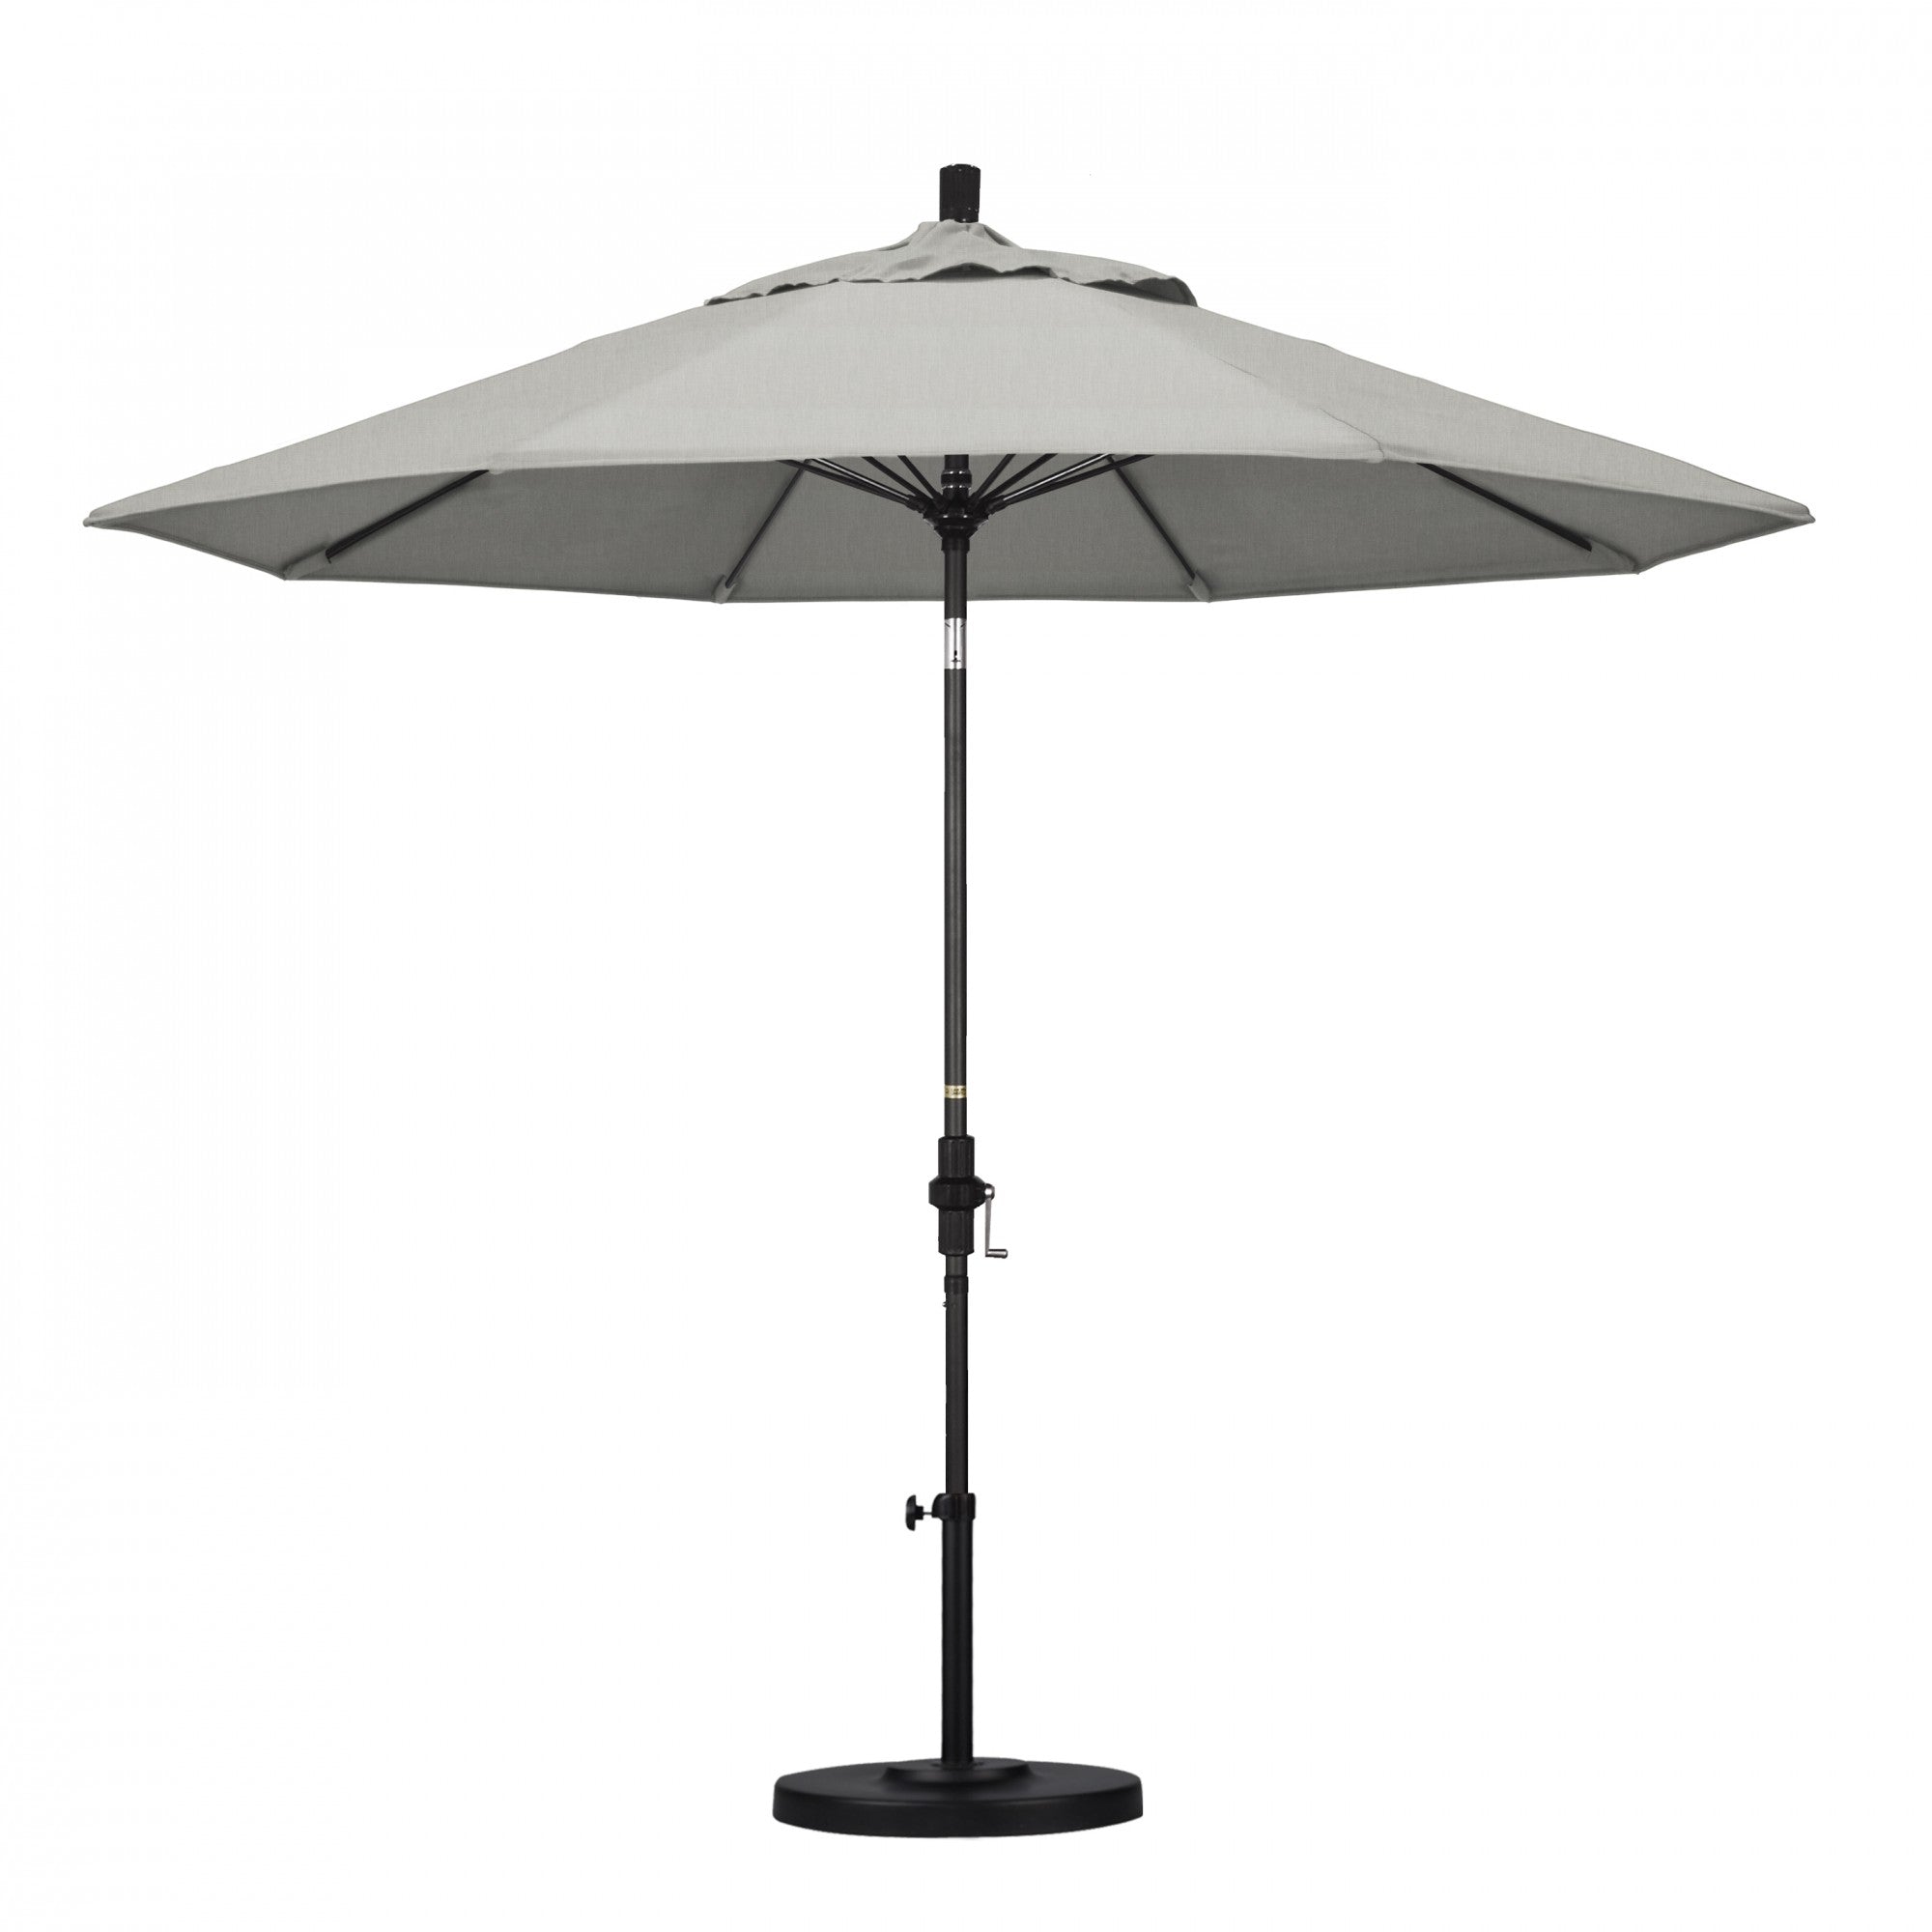 California Umbrella - 9' - Patio Umbrella Umbrella - Aluminum Pole - Granite - Sunbrella  - GSCUF908705-5402